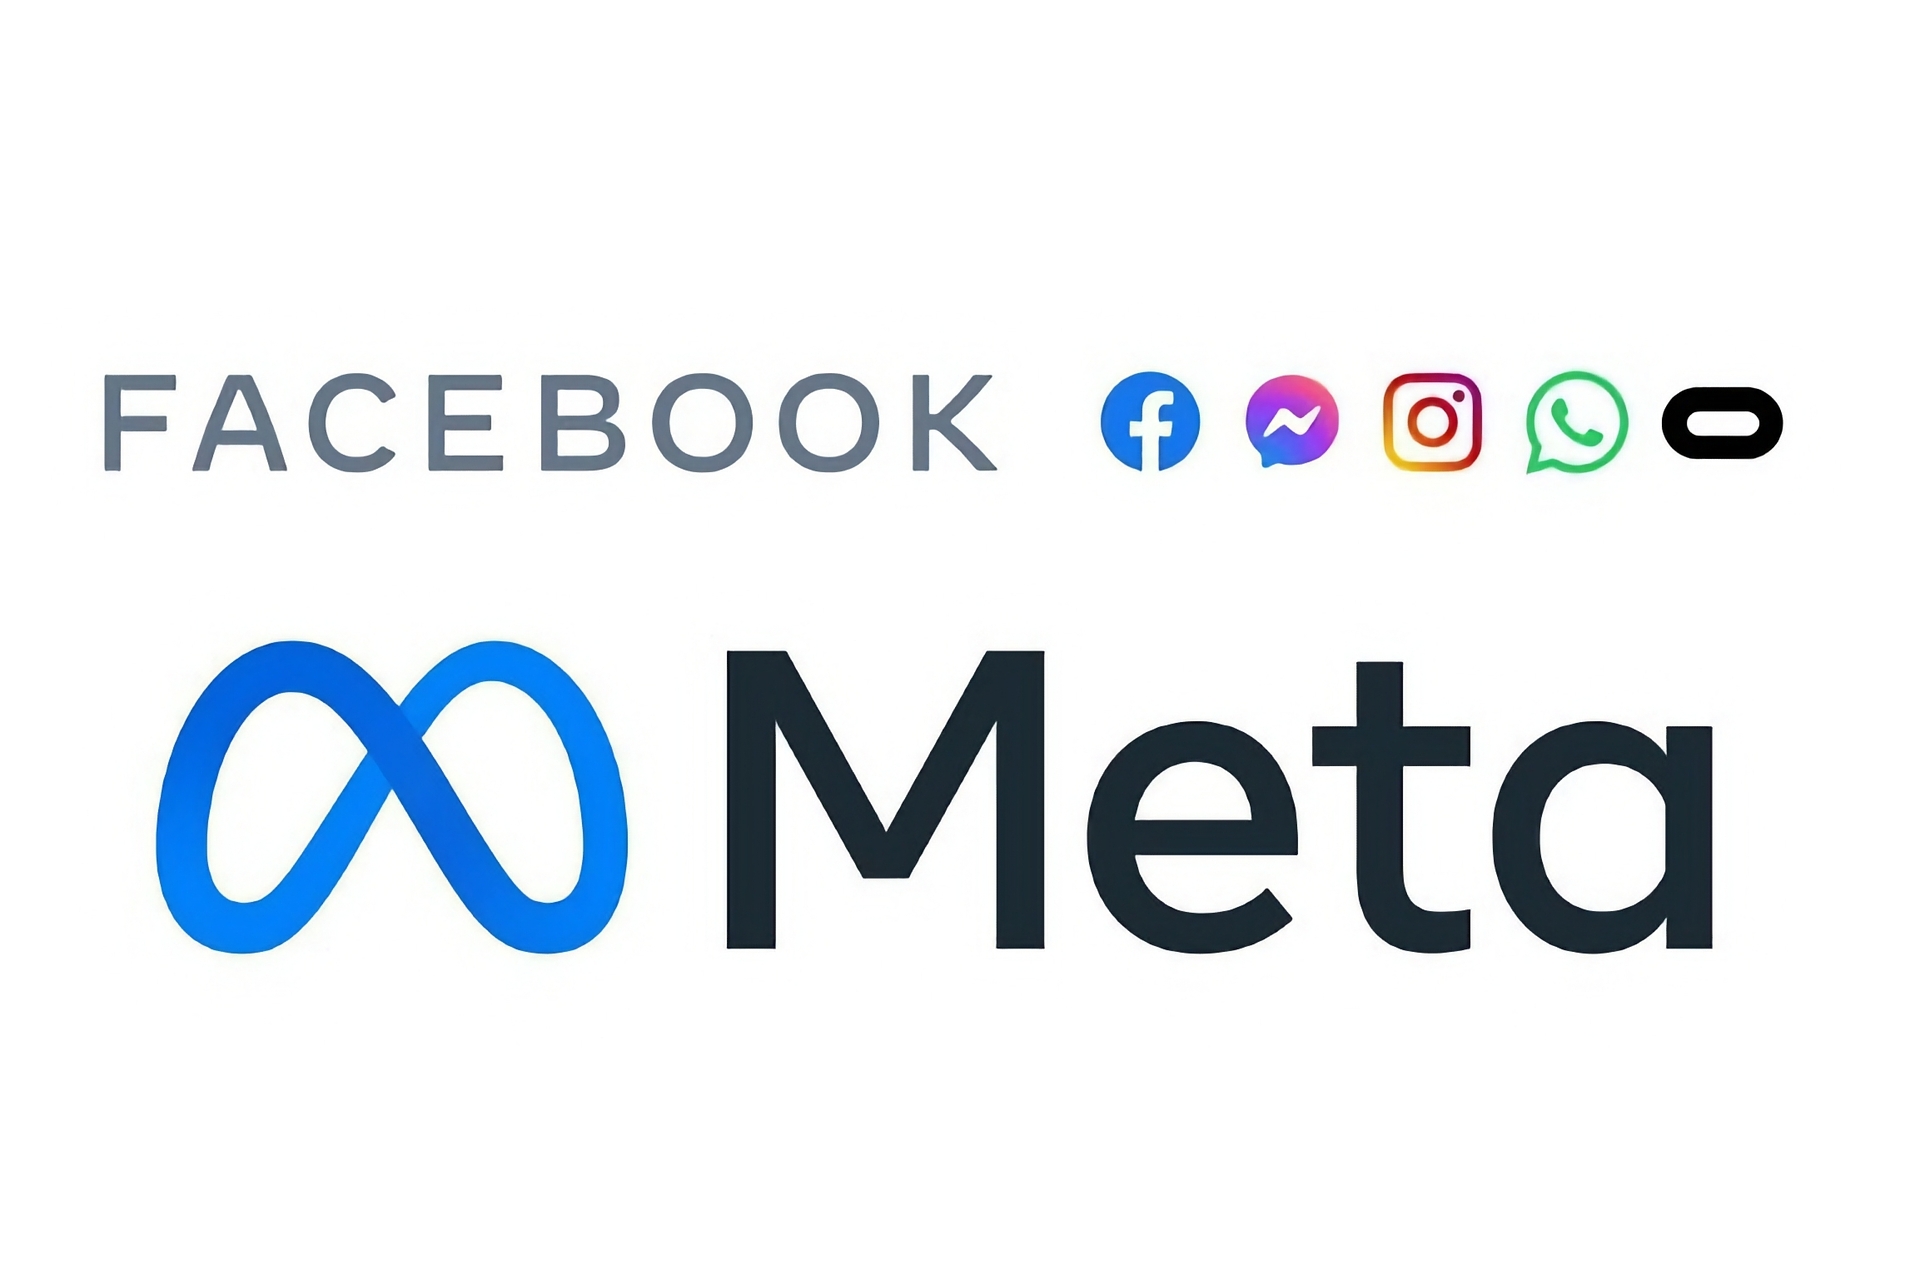 Facebook: službeni logo Mete, kompanije koja posjeduje Facebook i druge velike društvene medije ili digitalne usluge na globalnom nivou, kao što su Messenger, Instagram, WhatsApp i Oculus